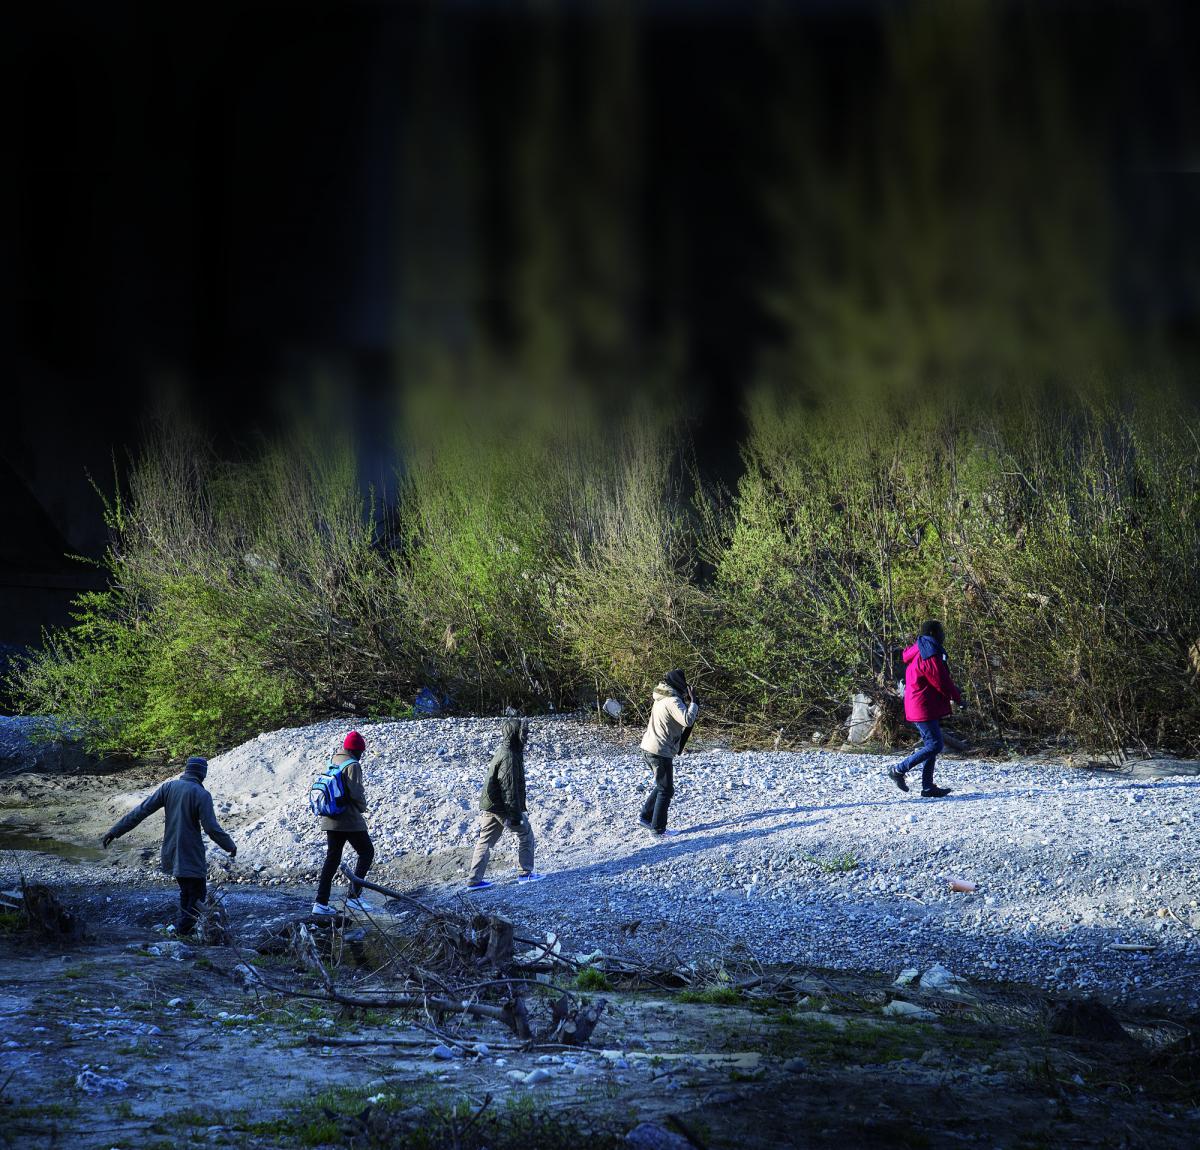 Un gruppo di migranti minorenni cerca di attraversare un fiume nei pressi di Ventimiglia (IM)